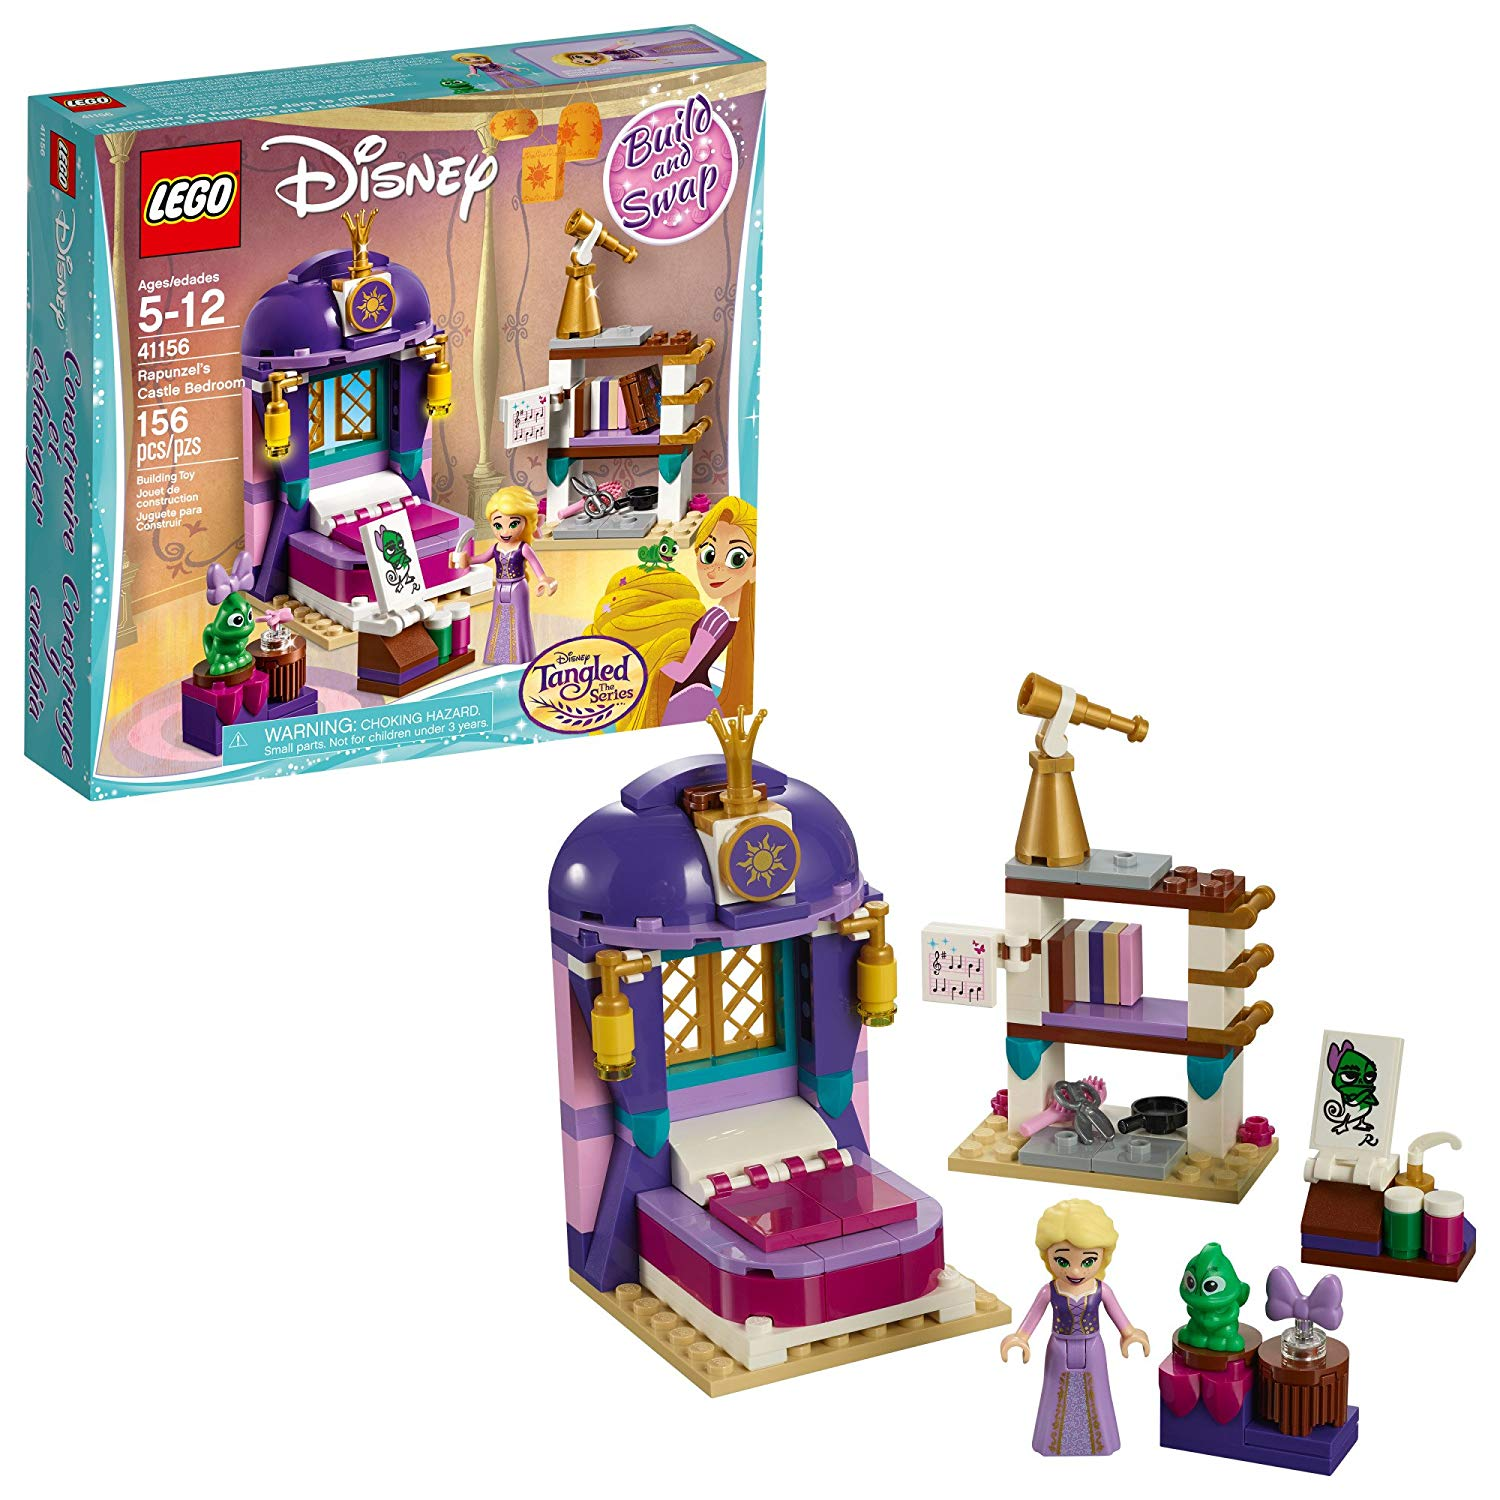 LEGO Disney Princess Rapunzel’s Castle Bedroom Only $11.73!